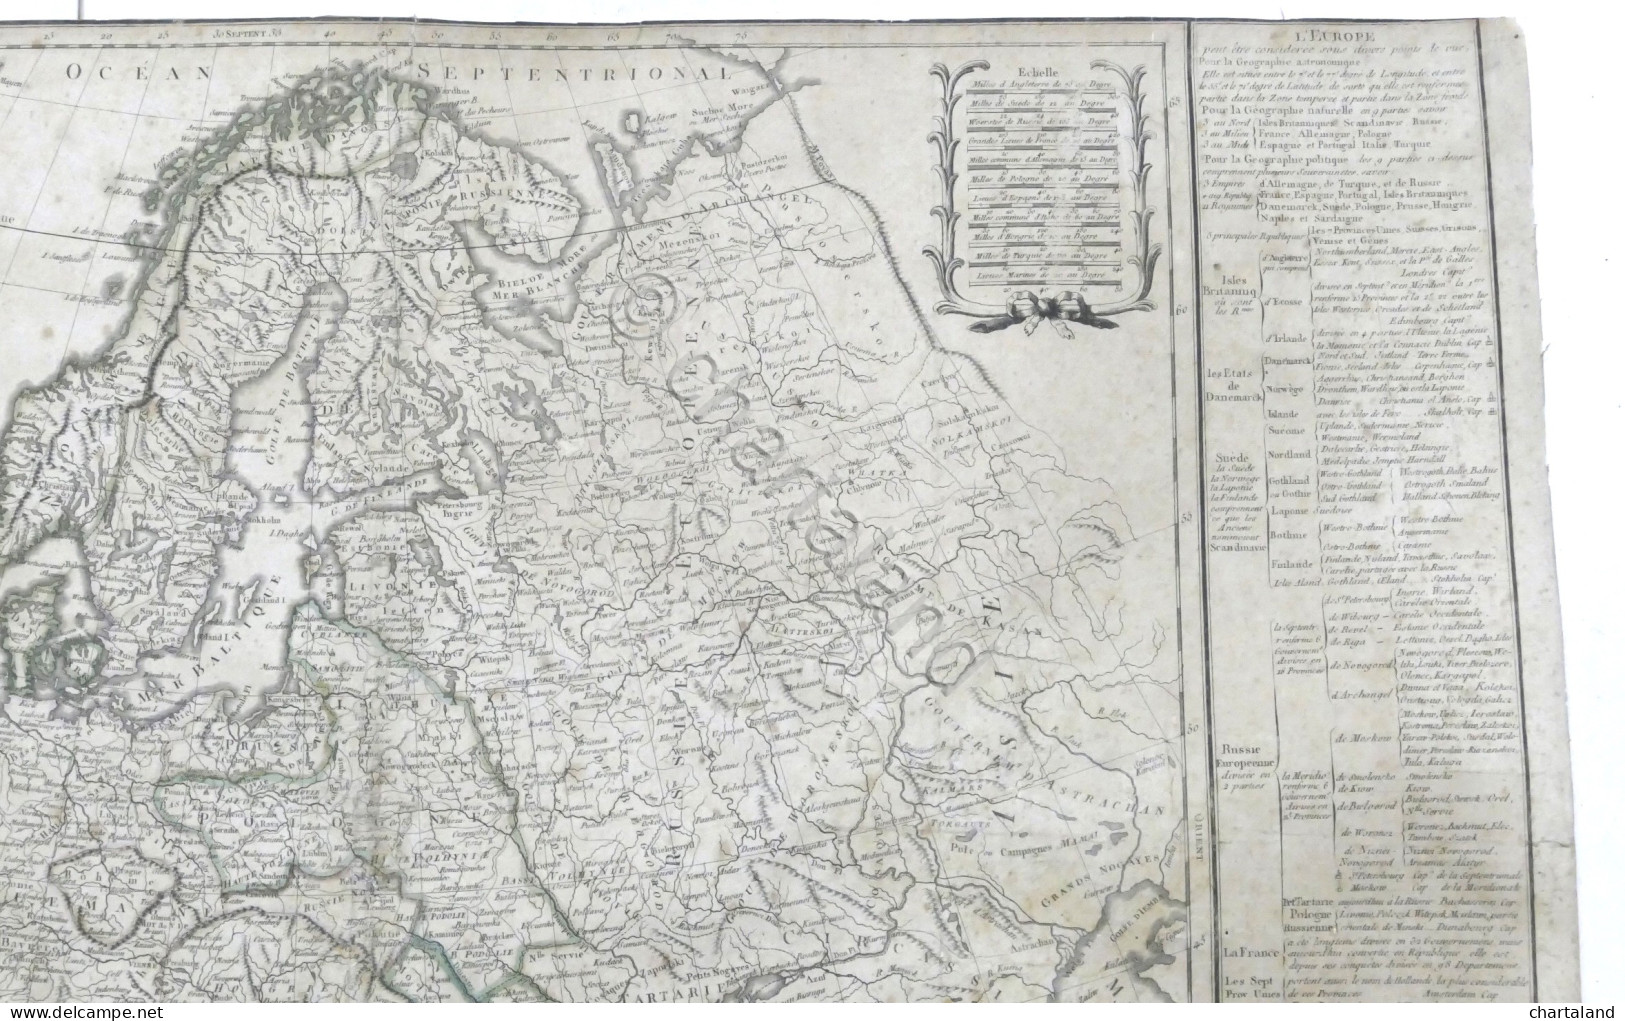 Carta Geografica - Europe Divisée En Ses Empires, Royaumes Et Républiques - 1797 - Autres & Non Classés